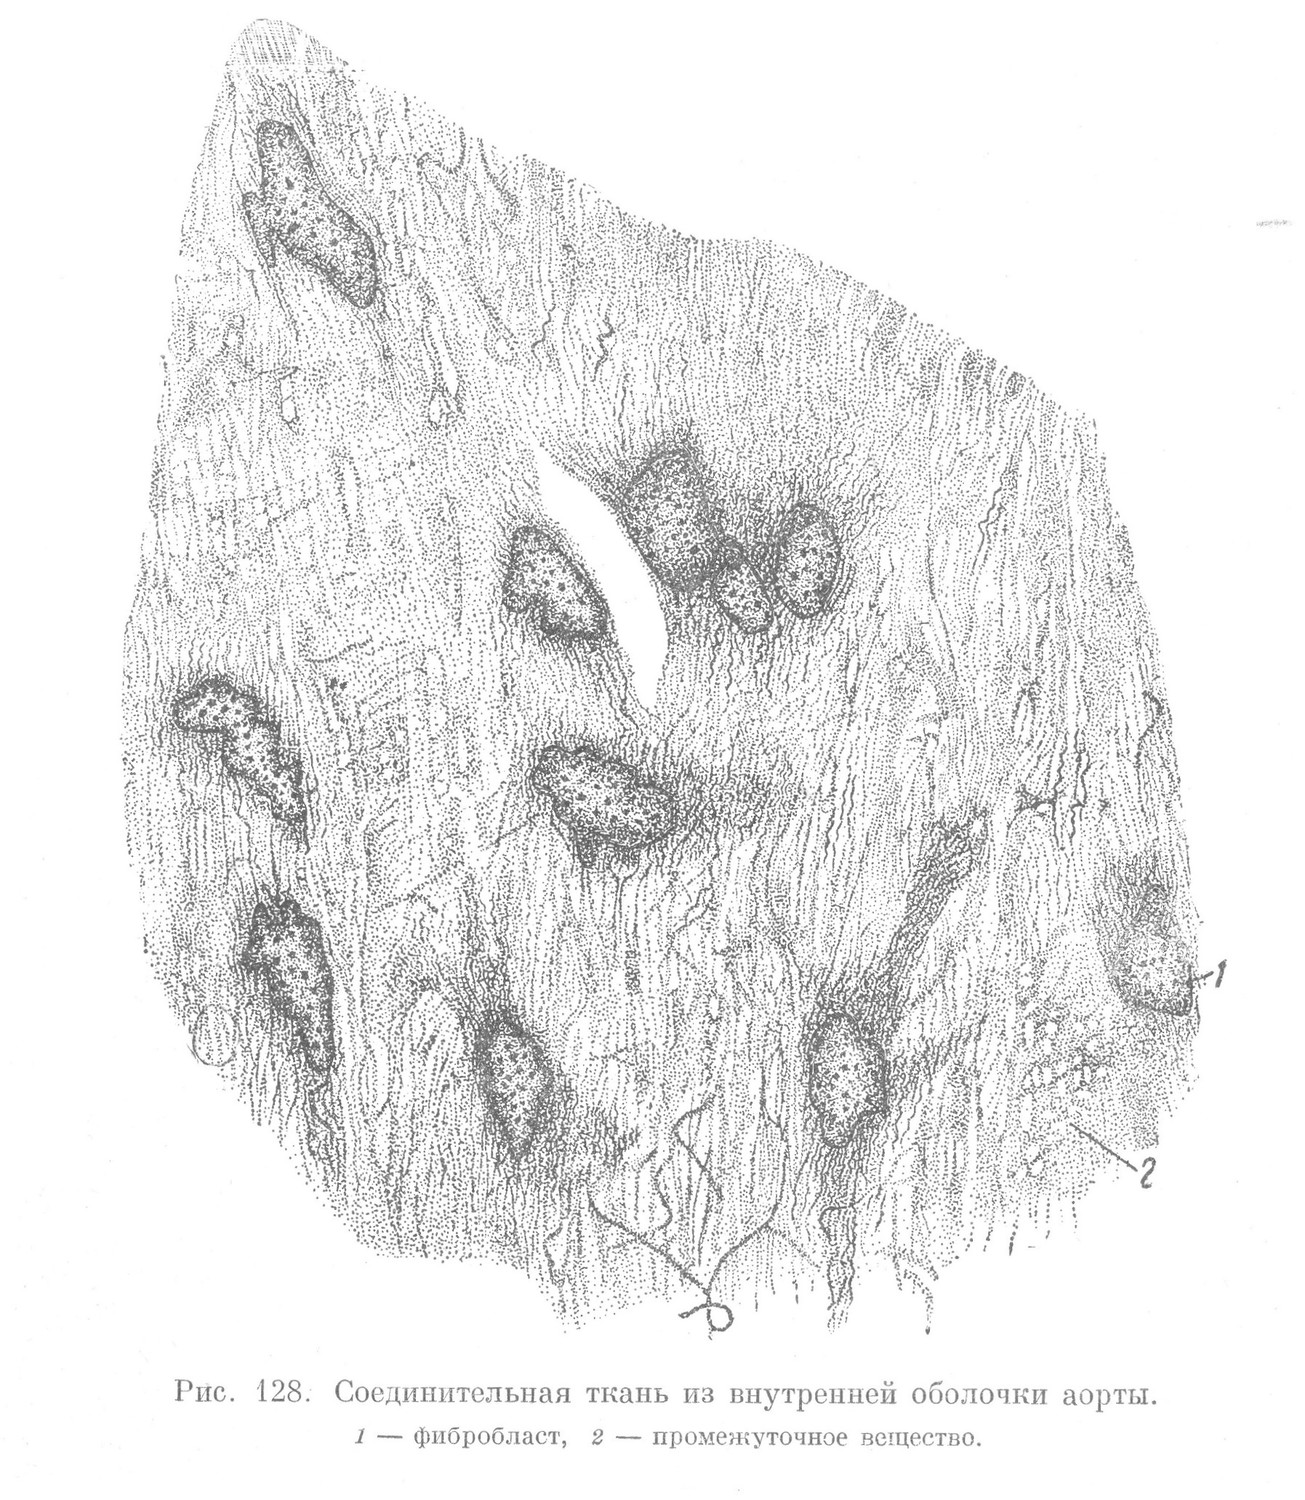 Соединительная ткань из внутренней оболочки аорты. 